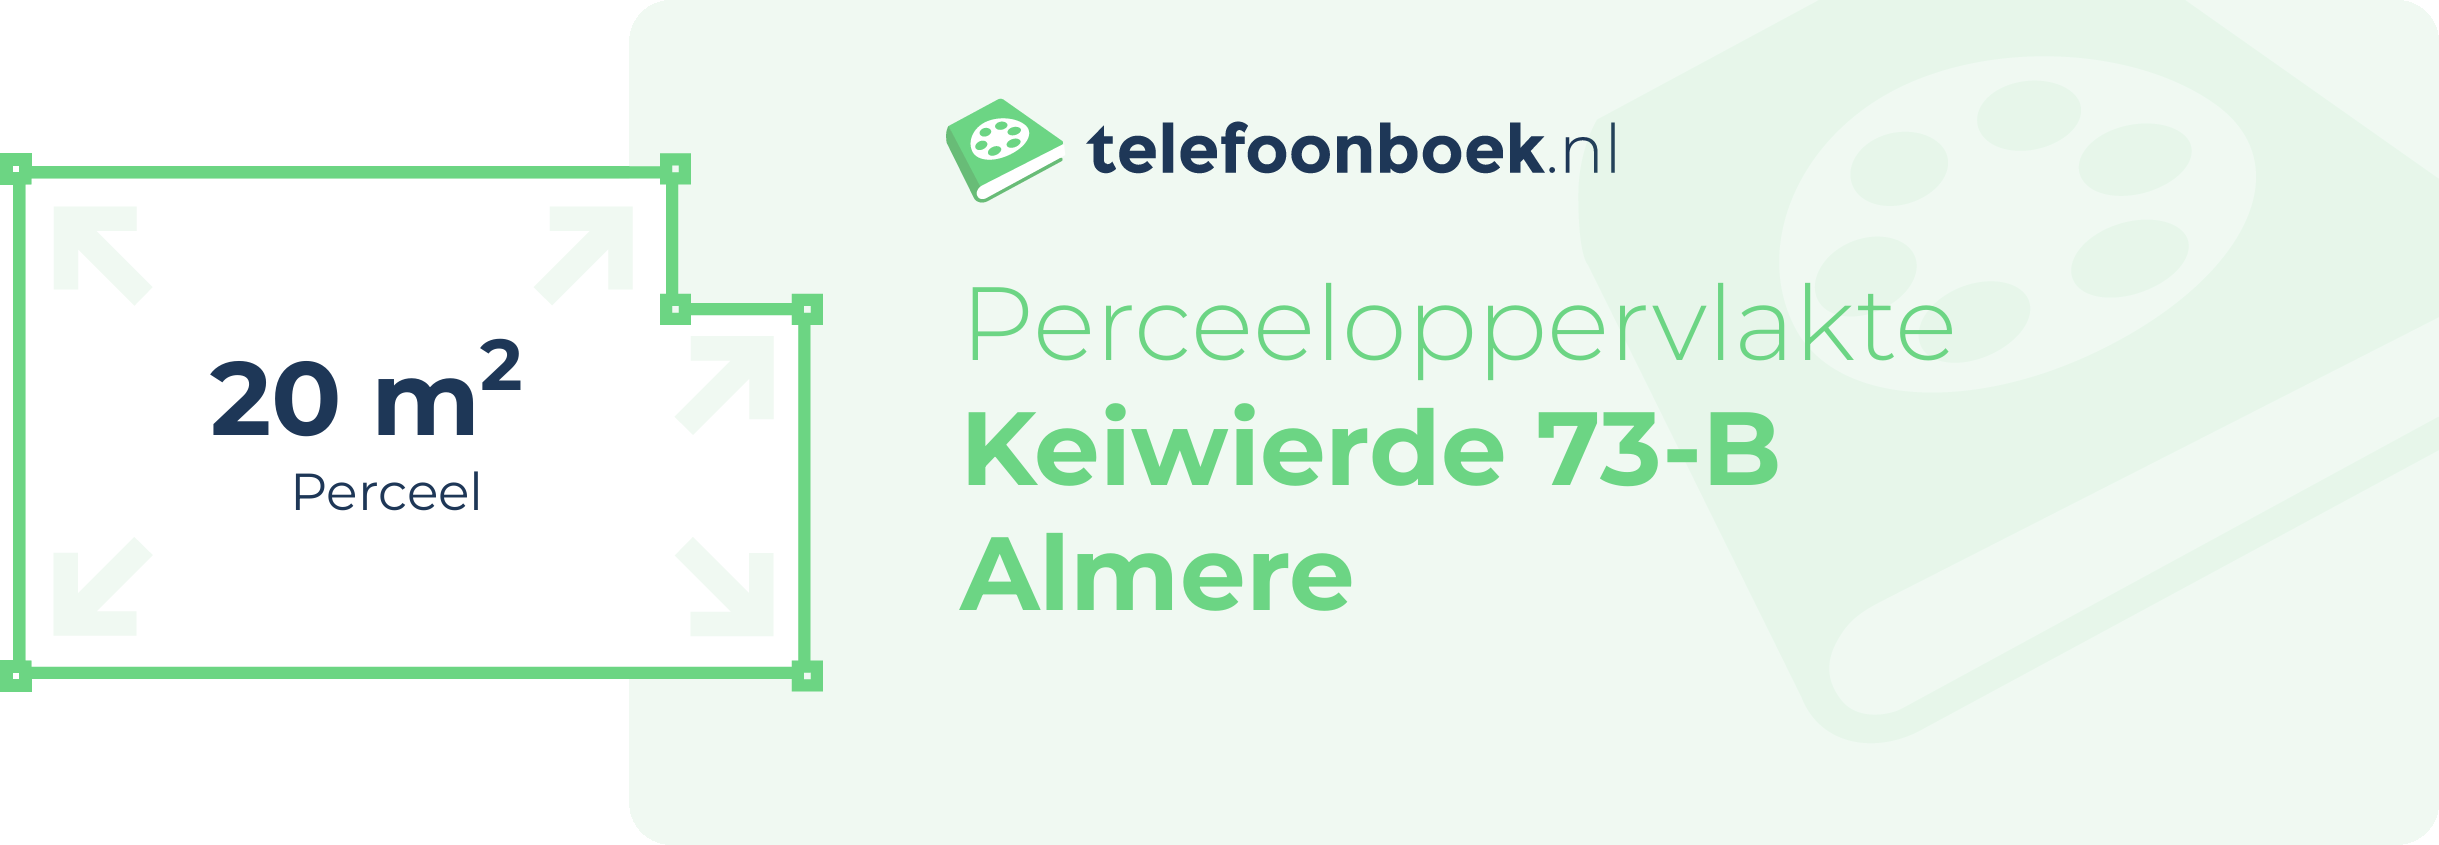 Perceeloppervlakte Keiwierde 73-B Almere